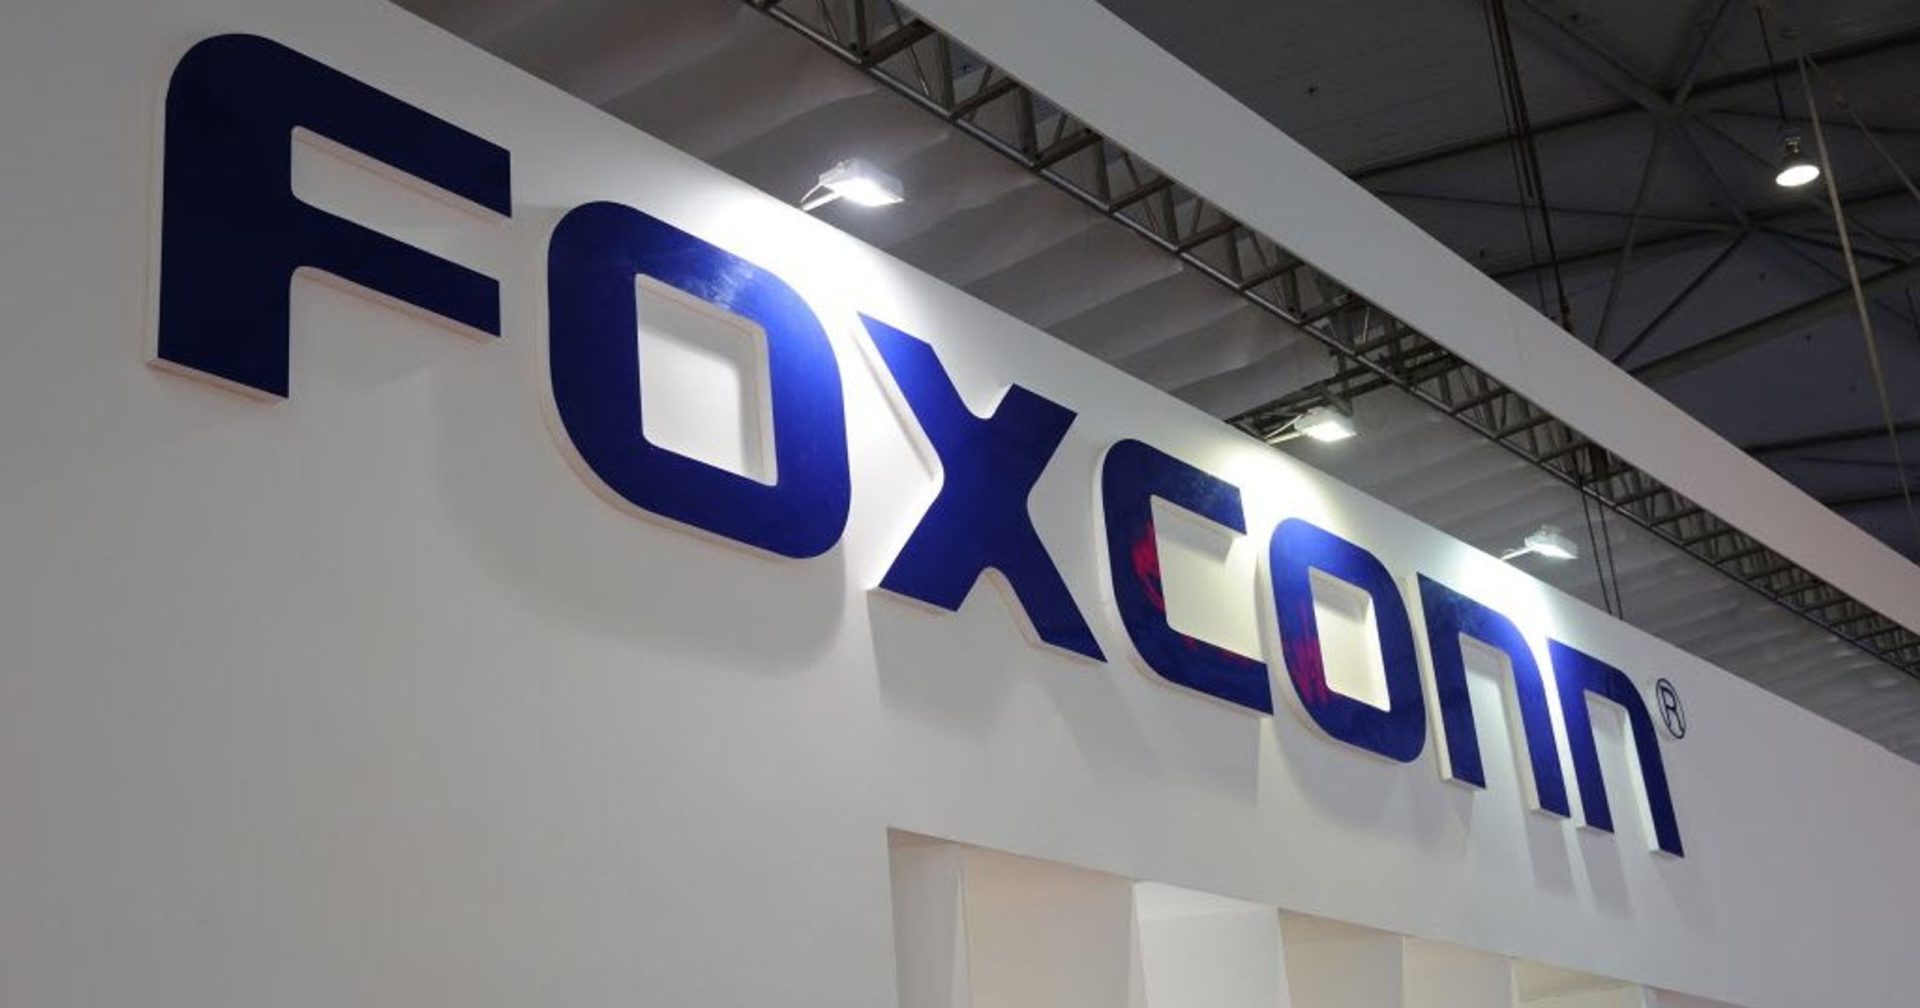 จีนสั่งล็อกดาวน์พื้นที่ใกล้โรงประกอบ iPhone ที่ใหญ่ที่สุดของ Foxconn ซึ่งอาจกระทบกับการผลิตได้!